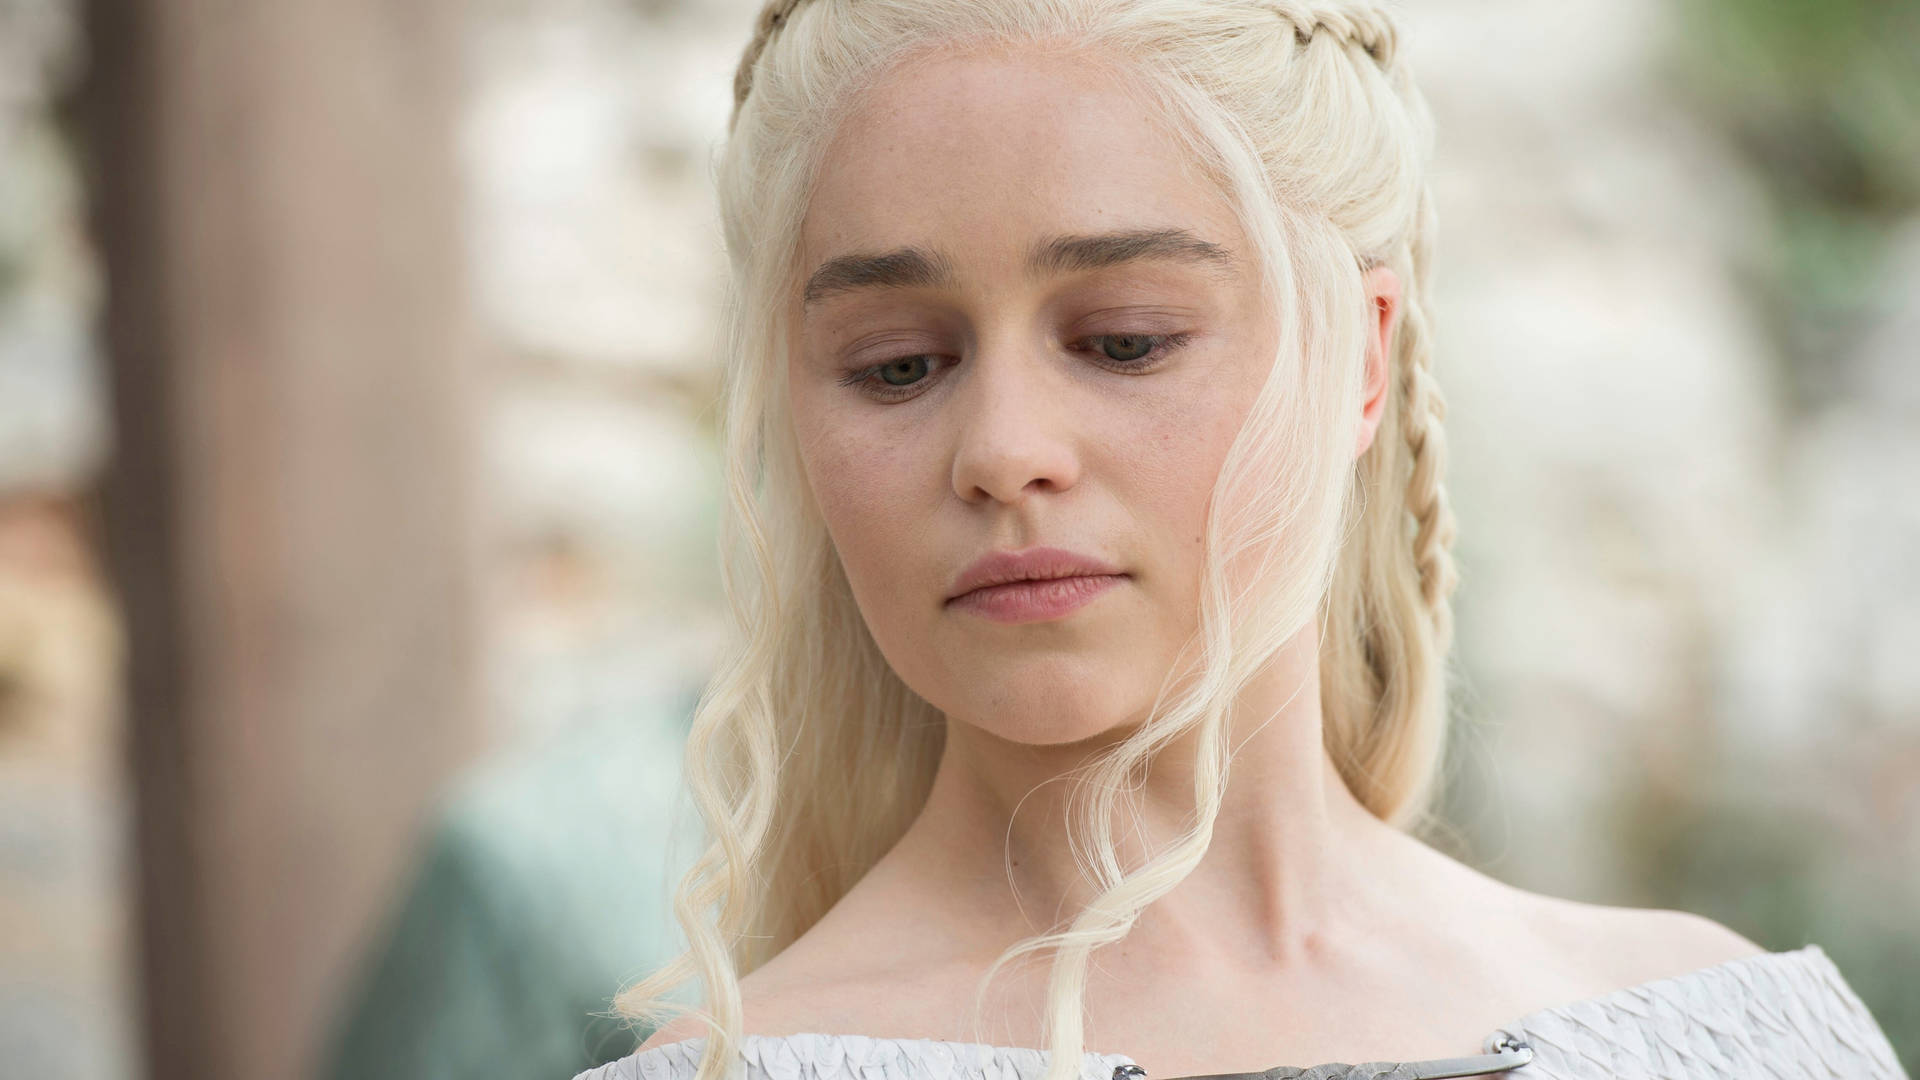 Daenerys Targaryen Blonde Woman Wallpaper